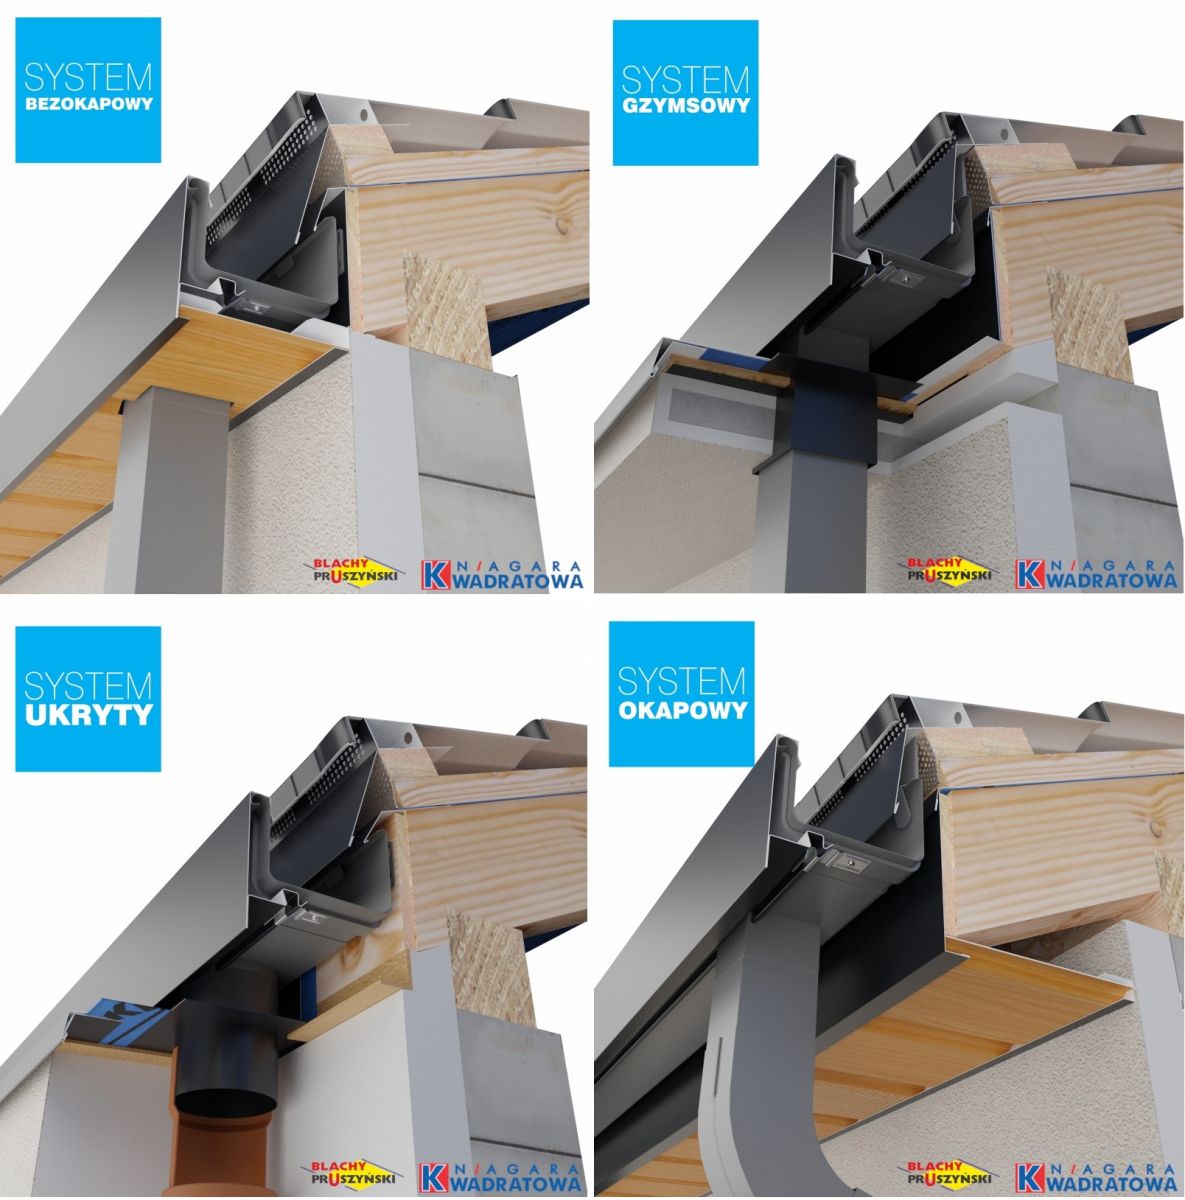 Rynny NIAGARA kwadratowa można montować w dachach o różnej konstrukcji strefy okapowej (fot. BLACHY PRUSZYŃSKI)